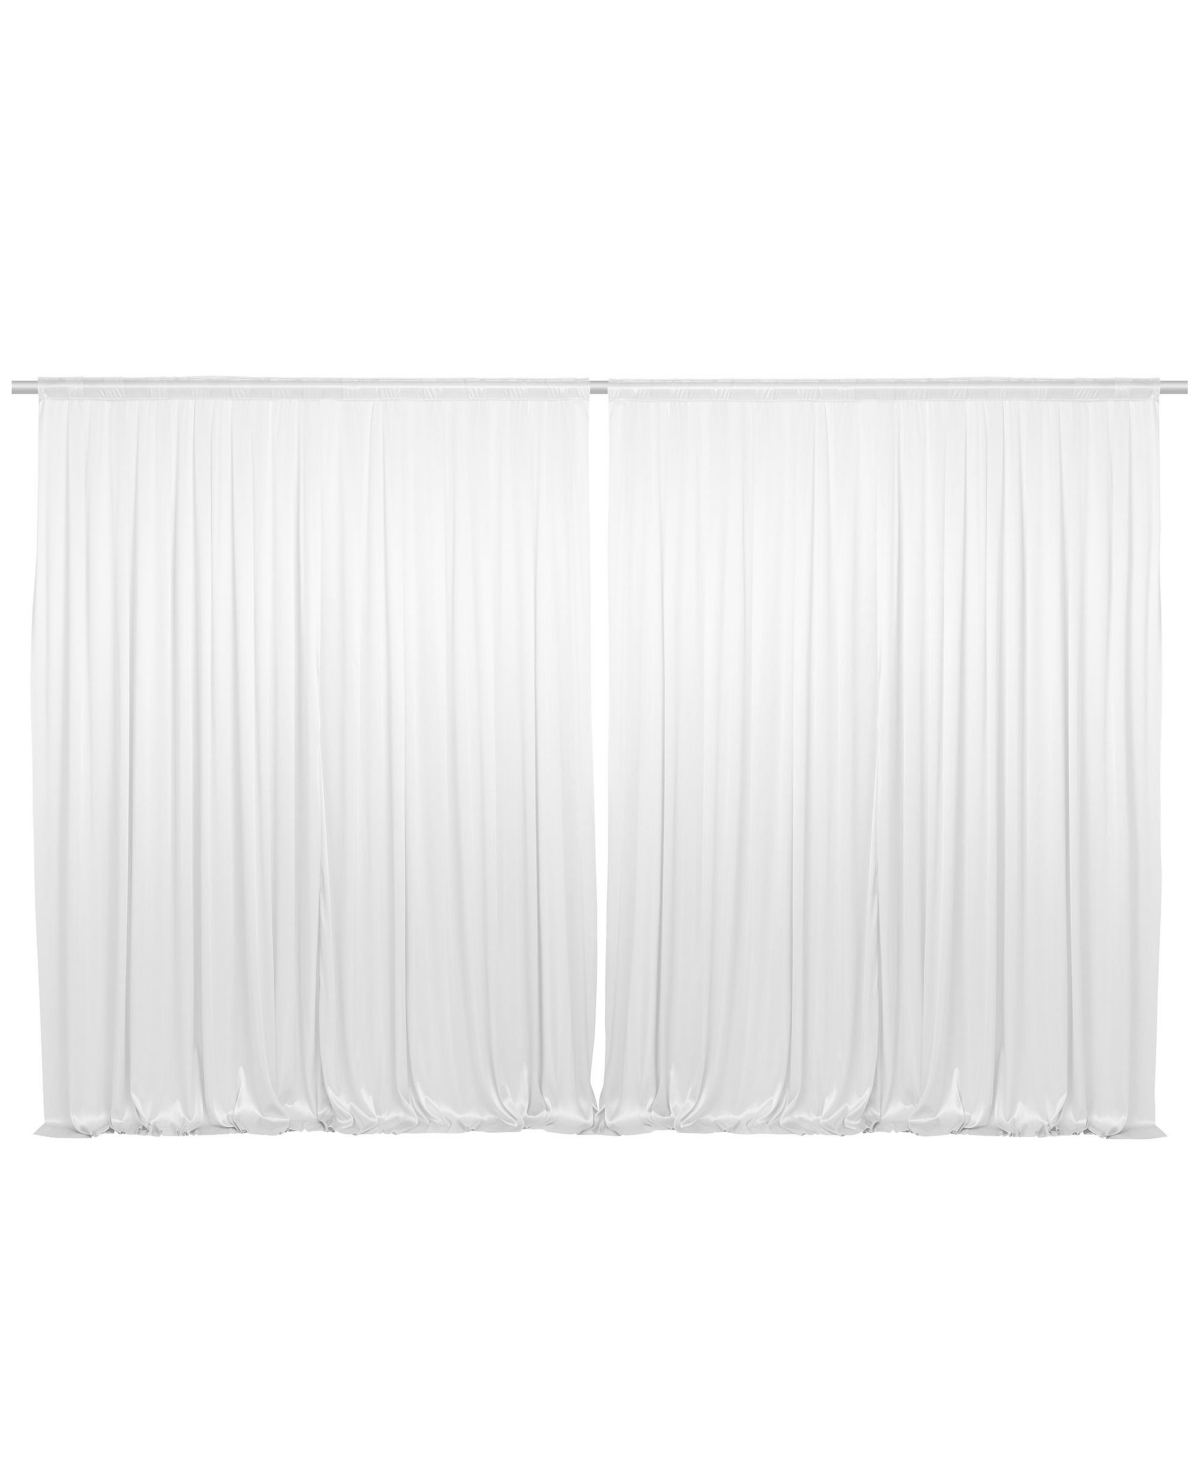 Set of 2 Photography Backdrop Curtains, 5ft x 7ft White Wedding Photo Background - White